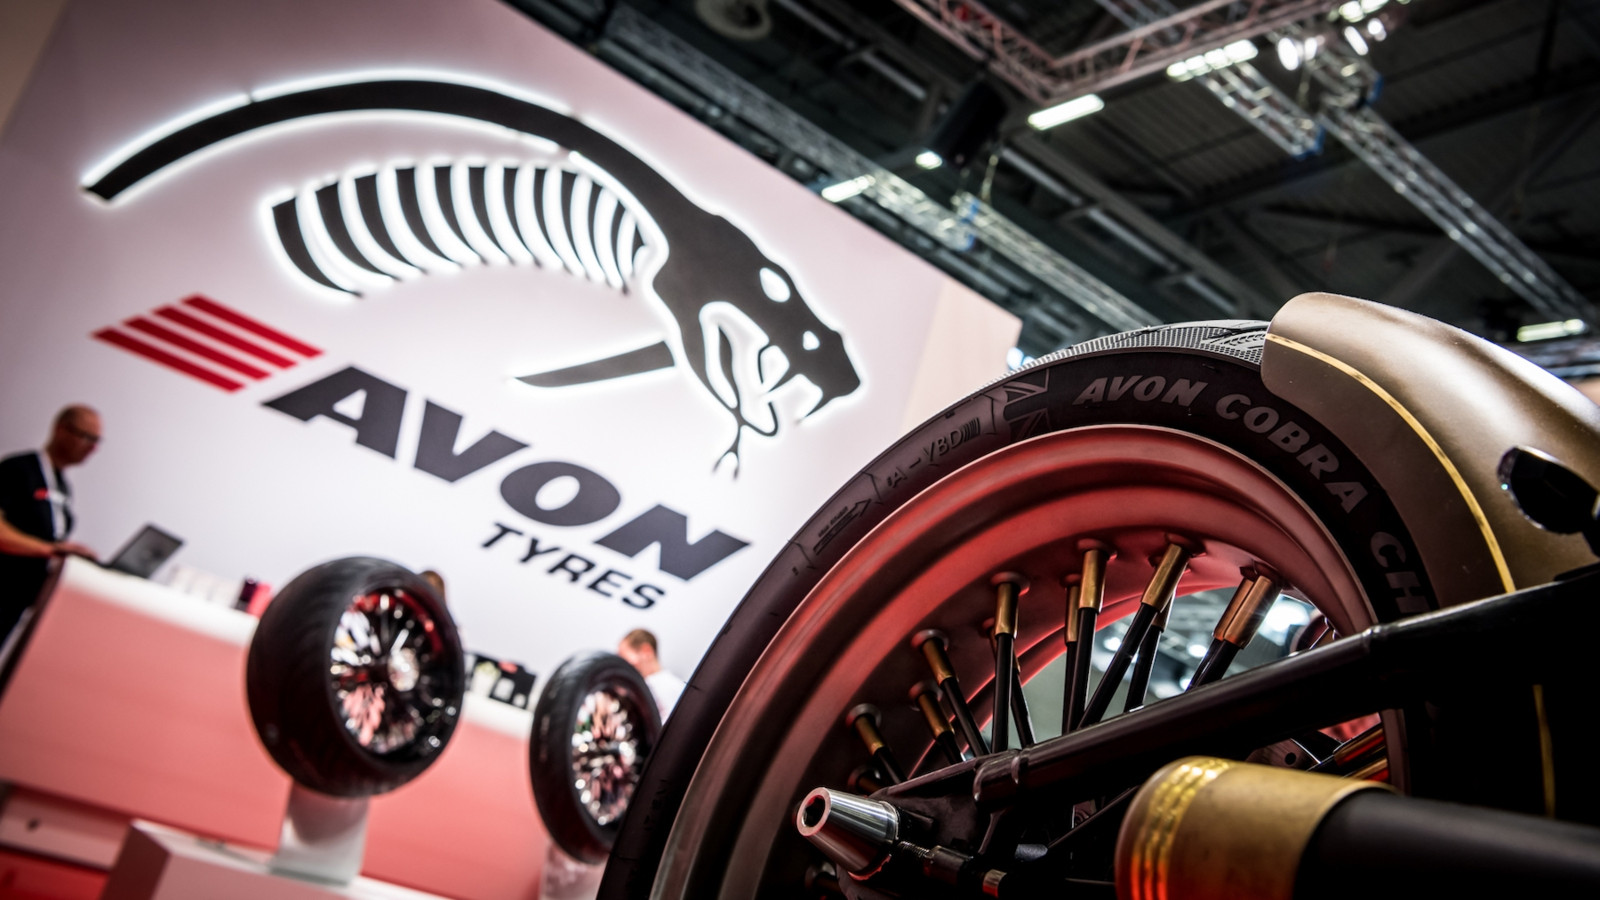 Avon war auch auf Motorradmessen stets eine präsente Reifenmarke. 